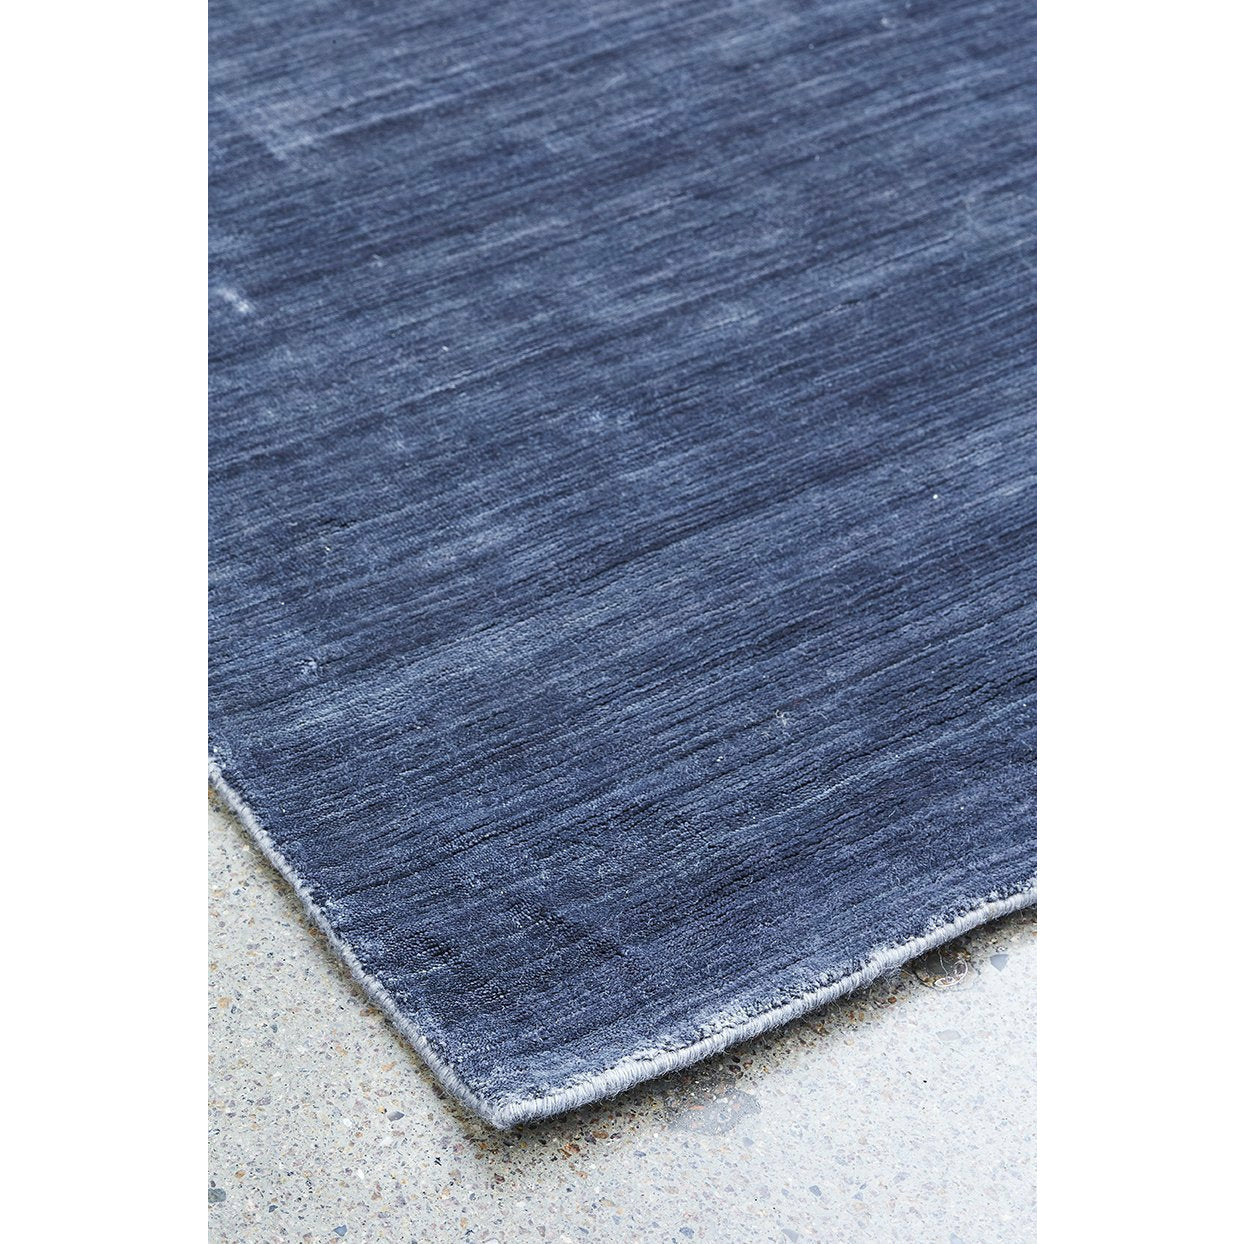 Massimo Bamboe tapijt staal zwart, 140x200 cm